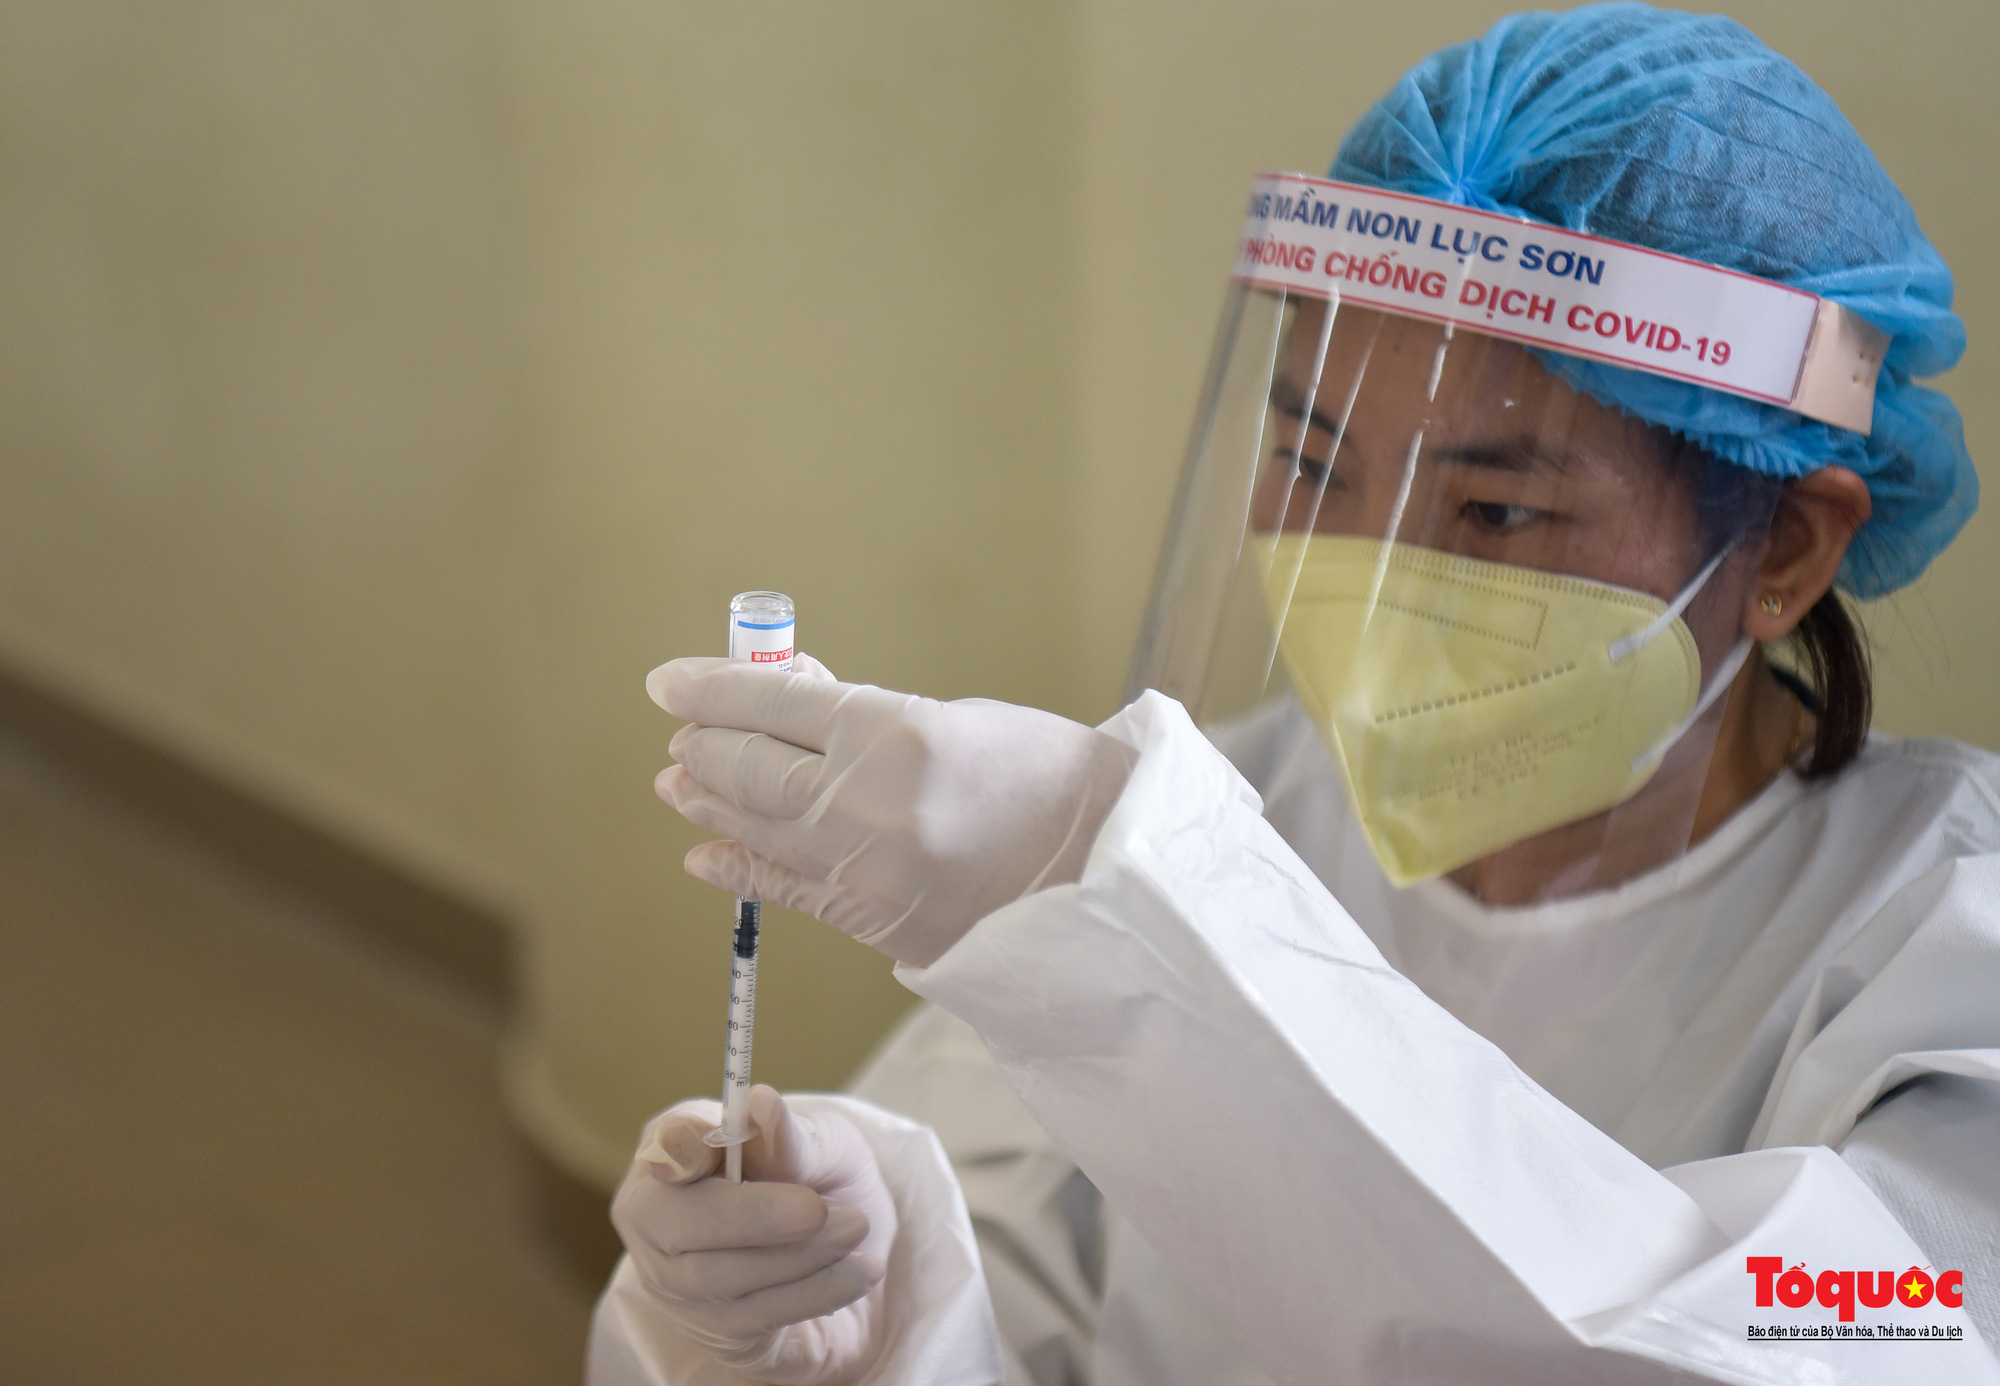 Đoàn y bác sĩ Bắc Giang hỗ trợ tiêm vaccine Vero Cell tại Hà Nội - Ảnh 11.